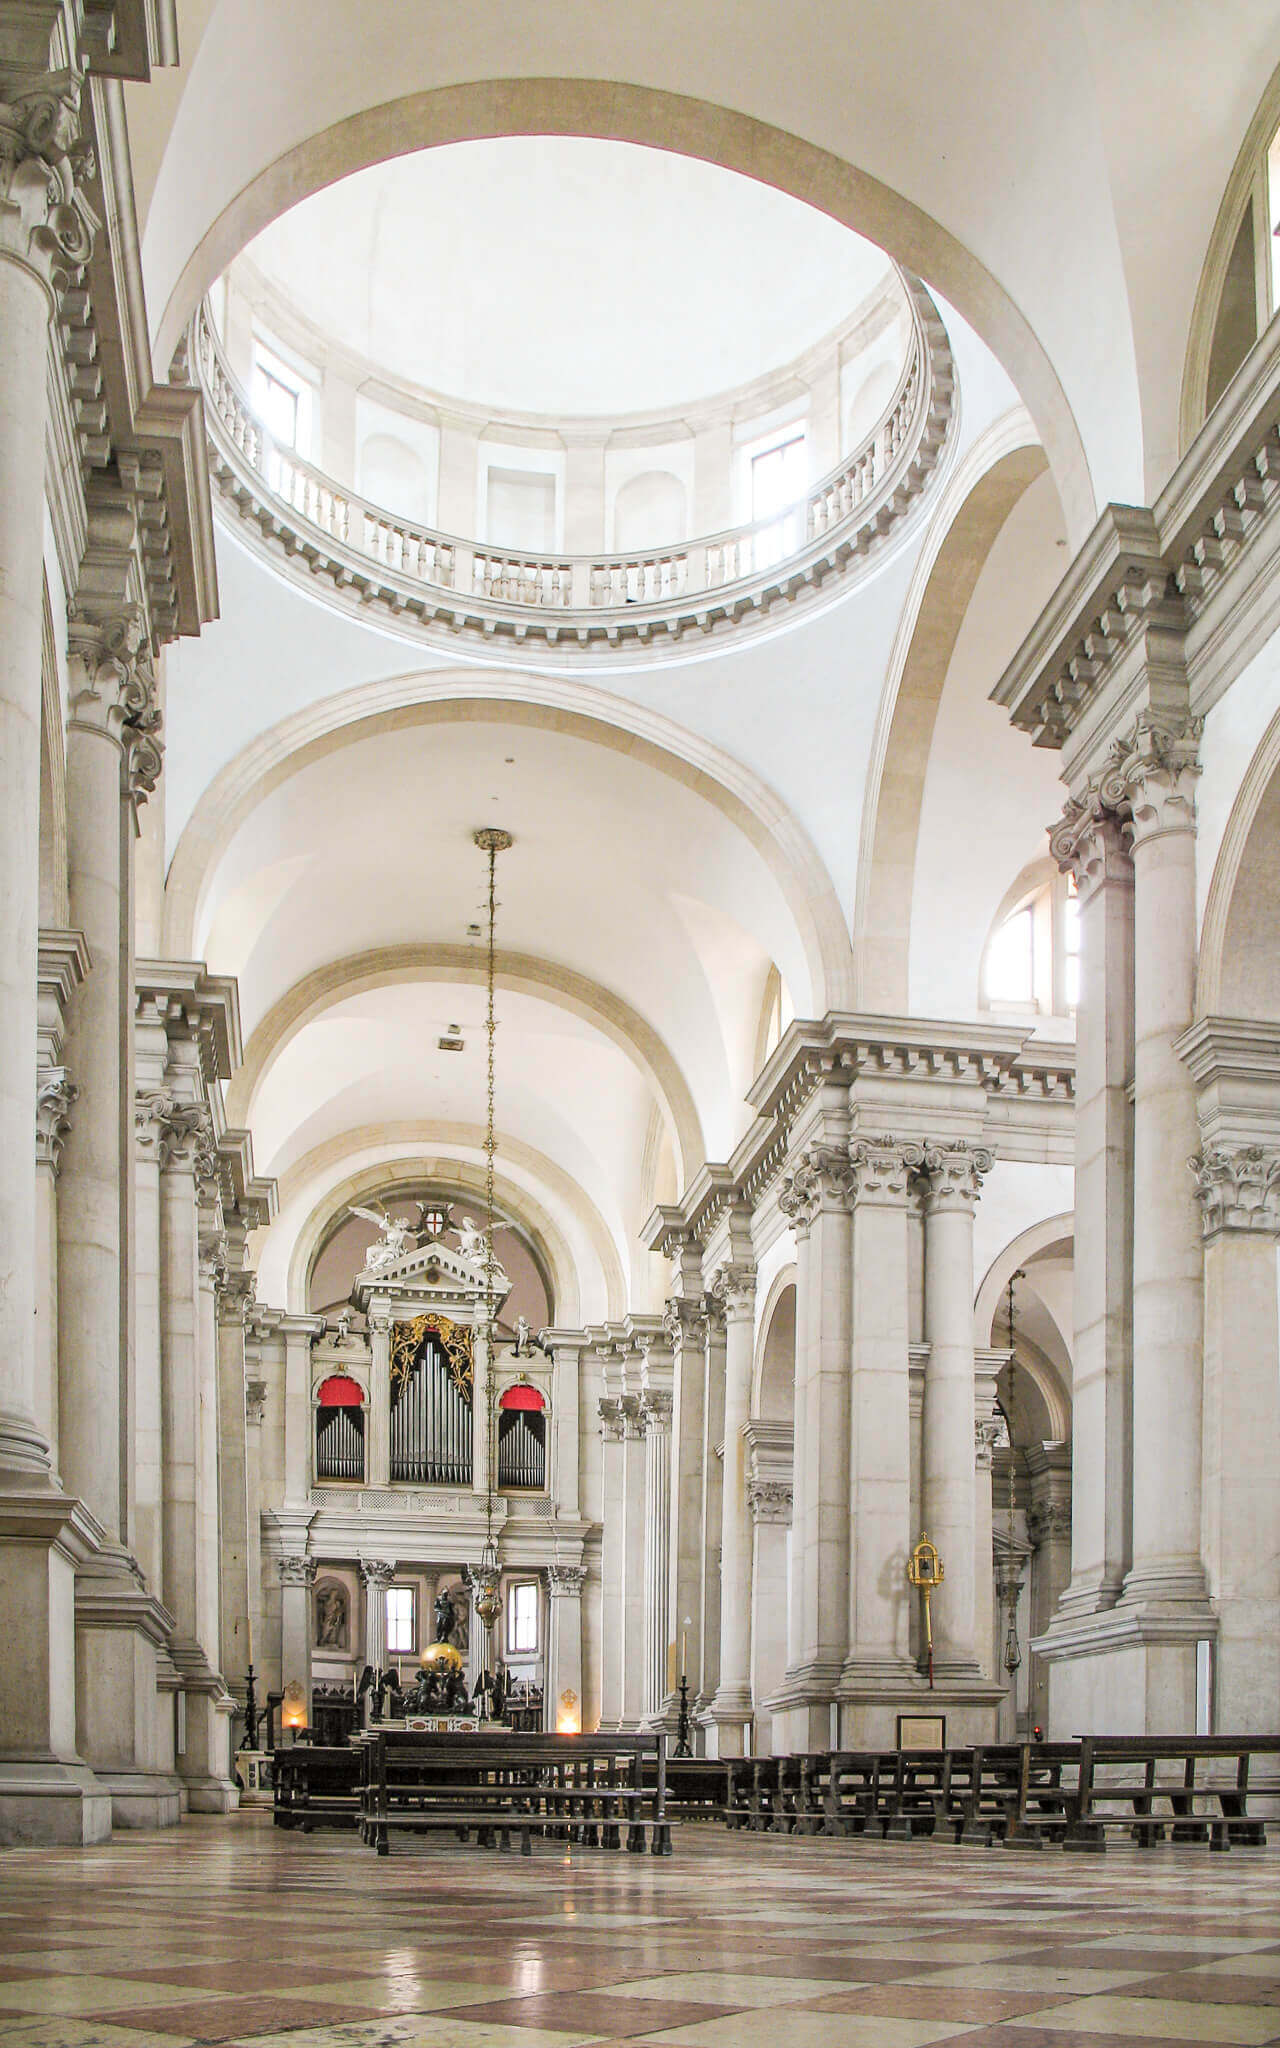 The interior of San Giorgio Maggiore in Venice